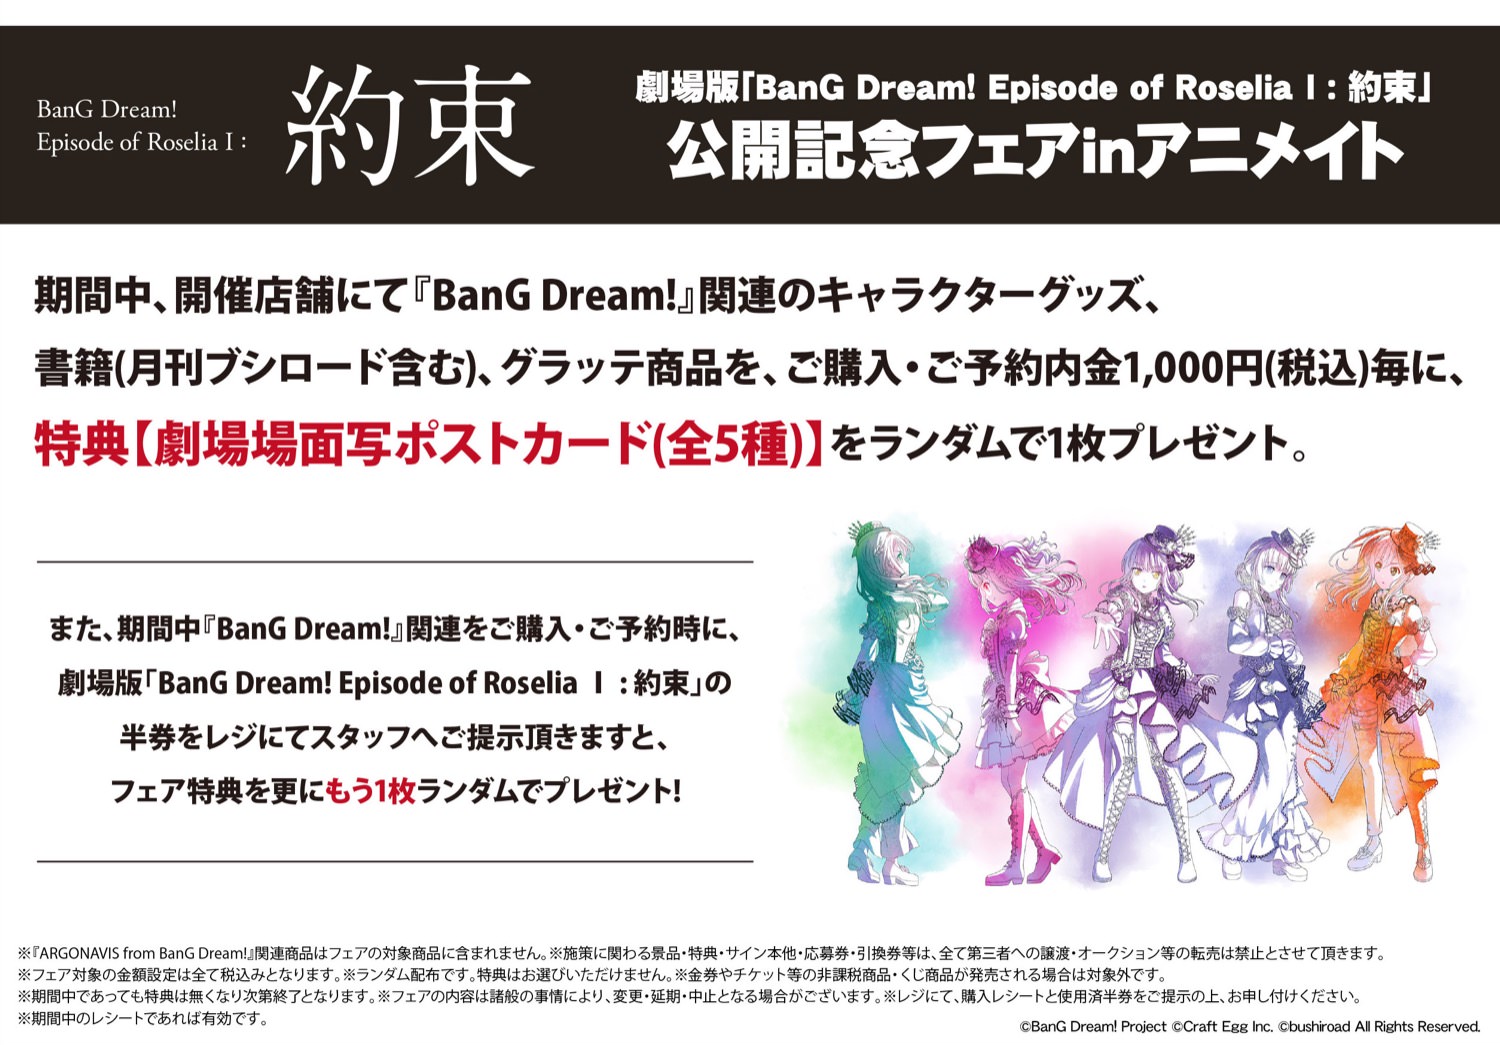 BanG Dream! (バンドリ) フェア in アニメイト 4.23-5.23開催!